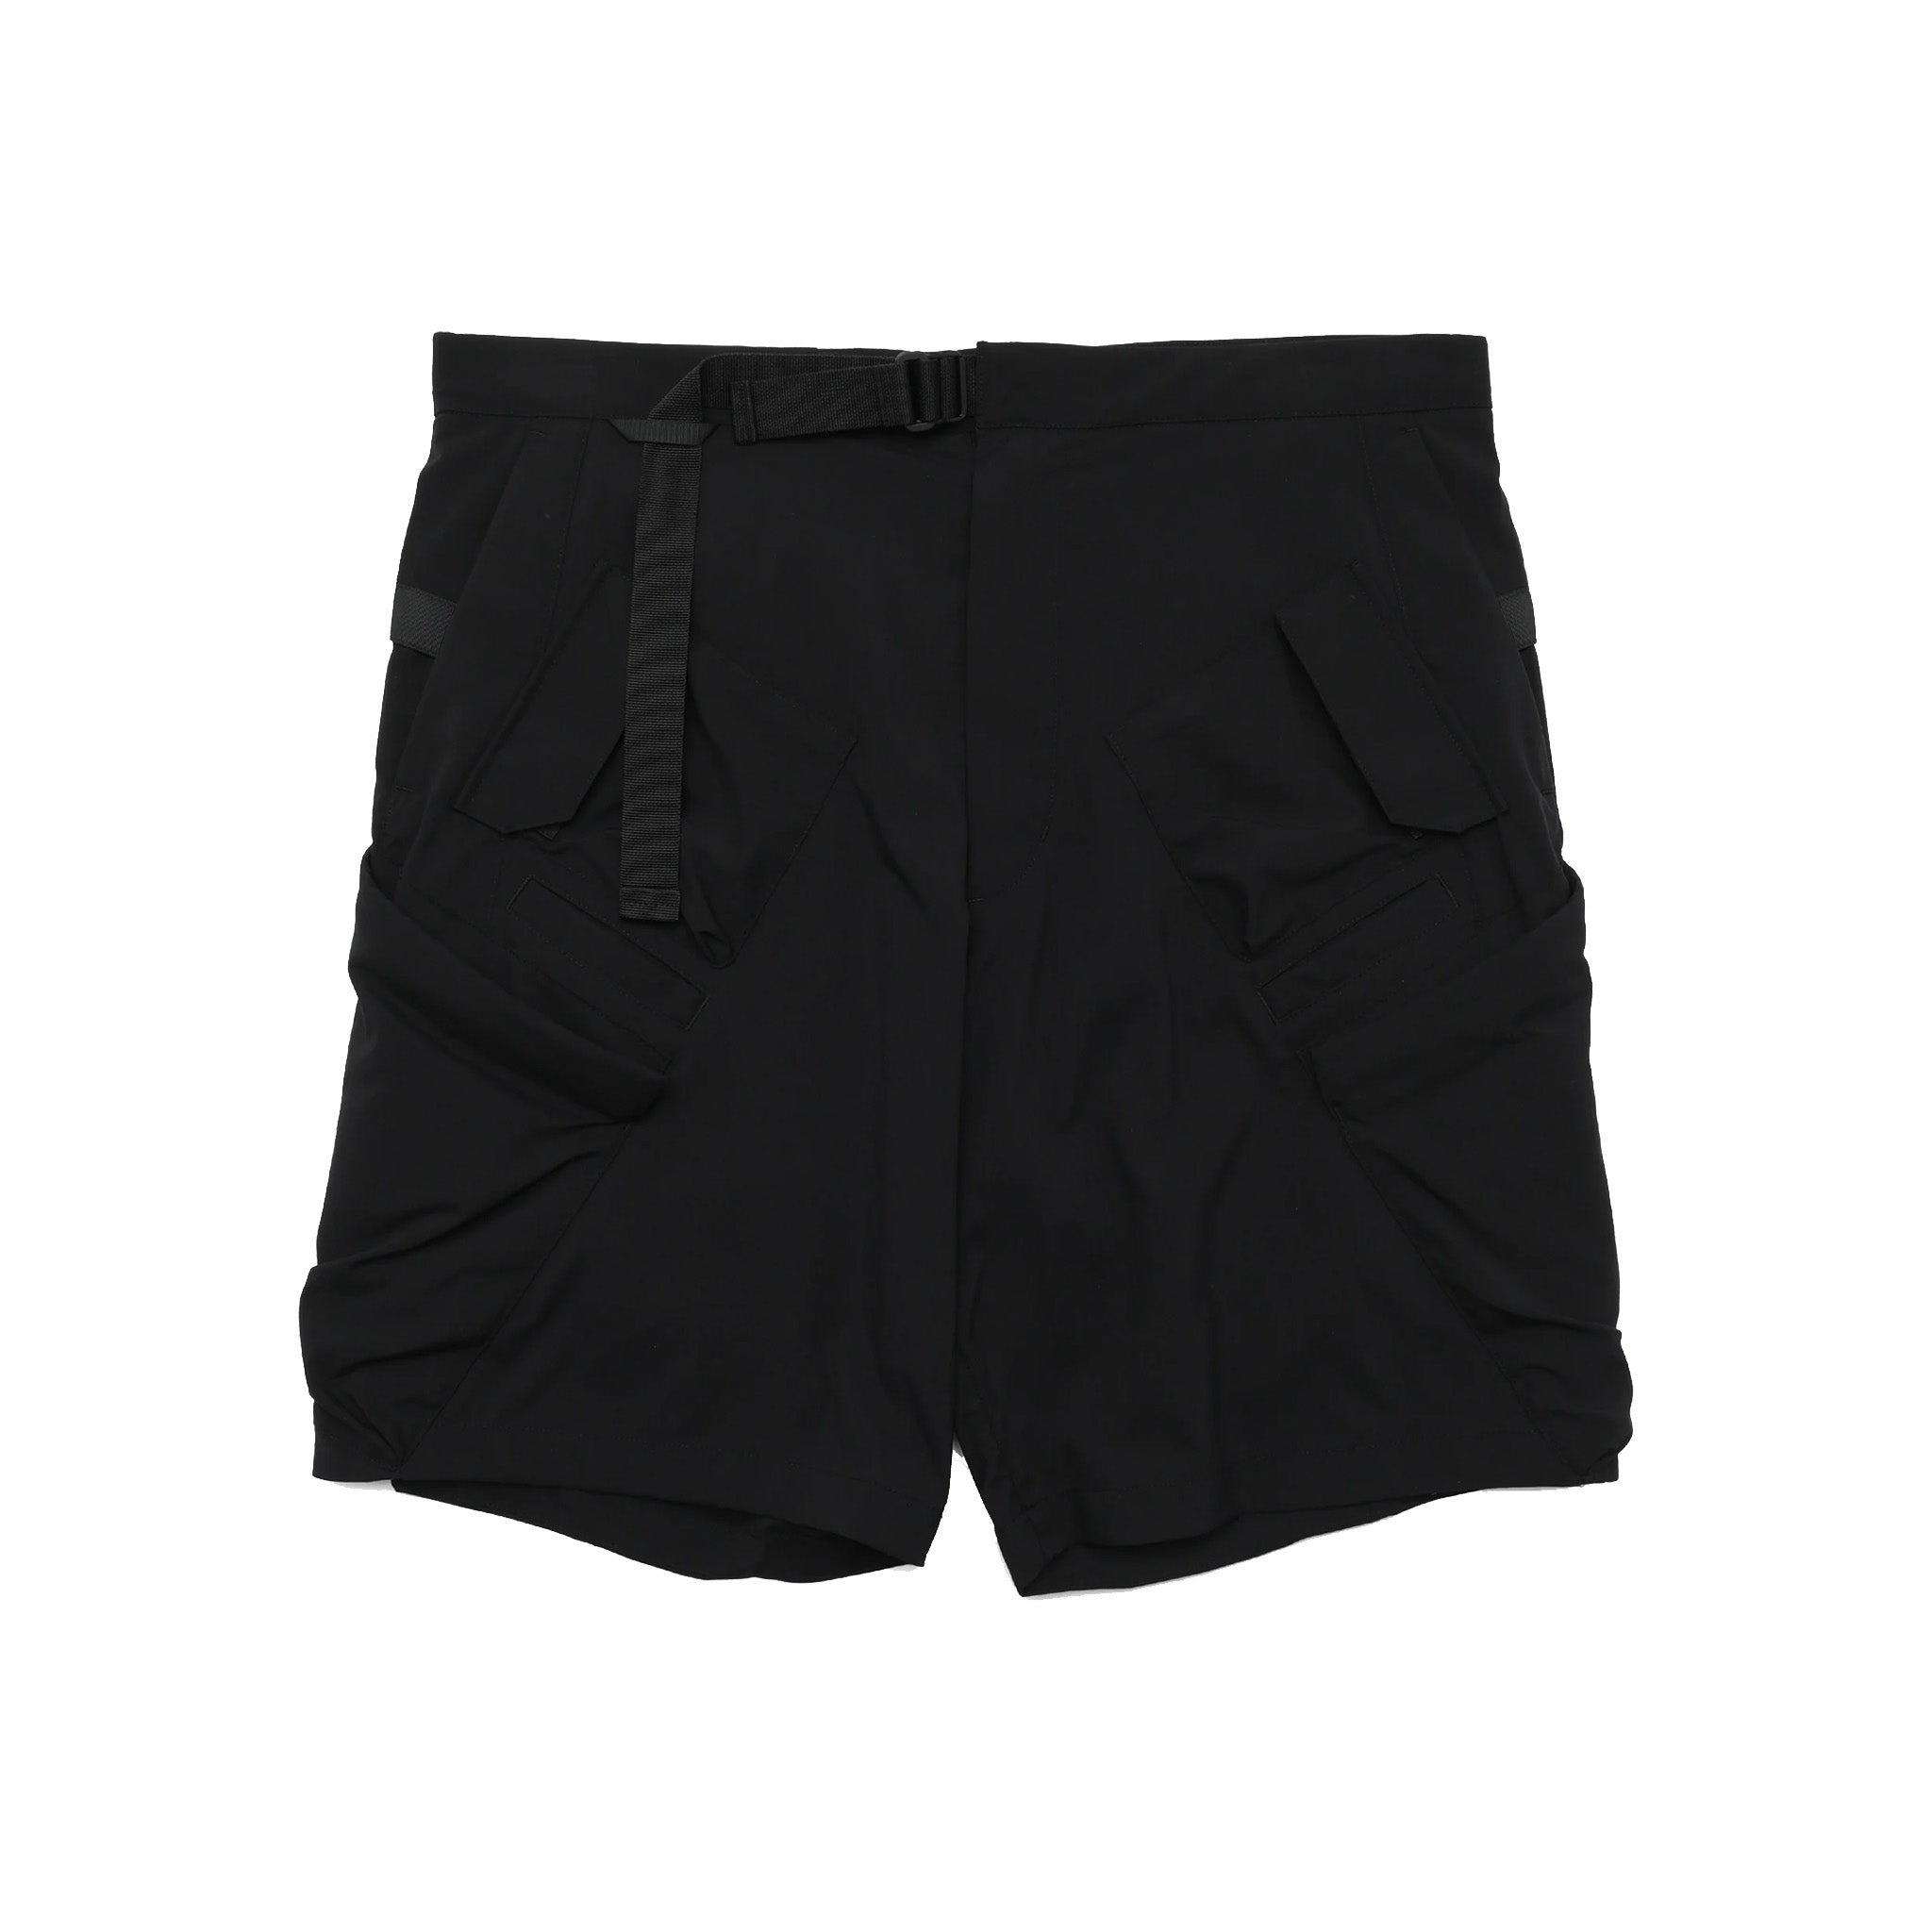 ACRONYM® SP29-M Nylon Stretch BDU Short Pant Gen. 1 (Black) - August Shop